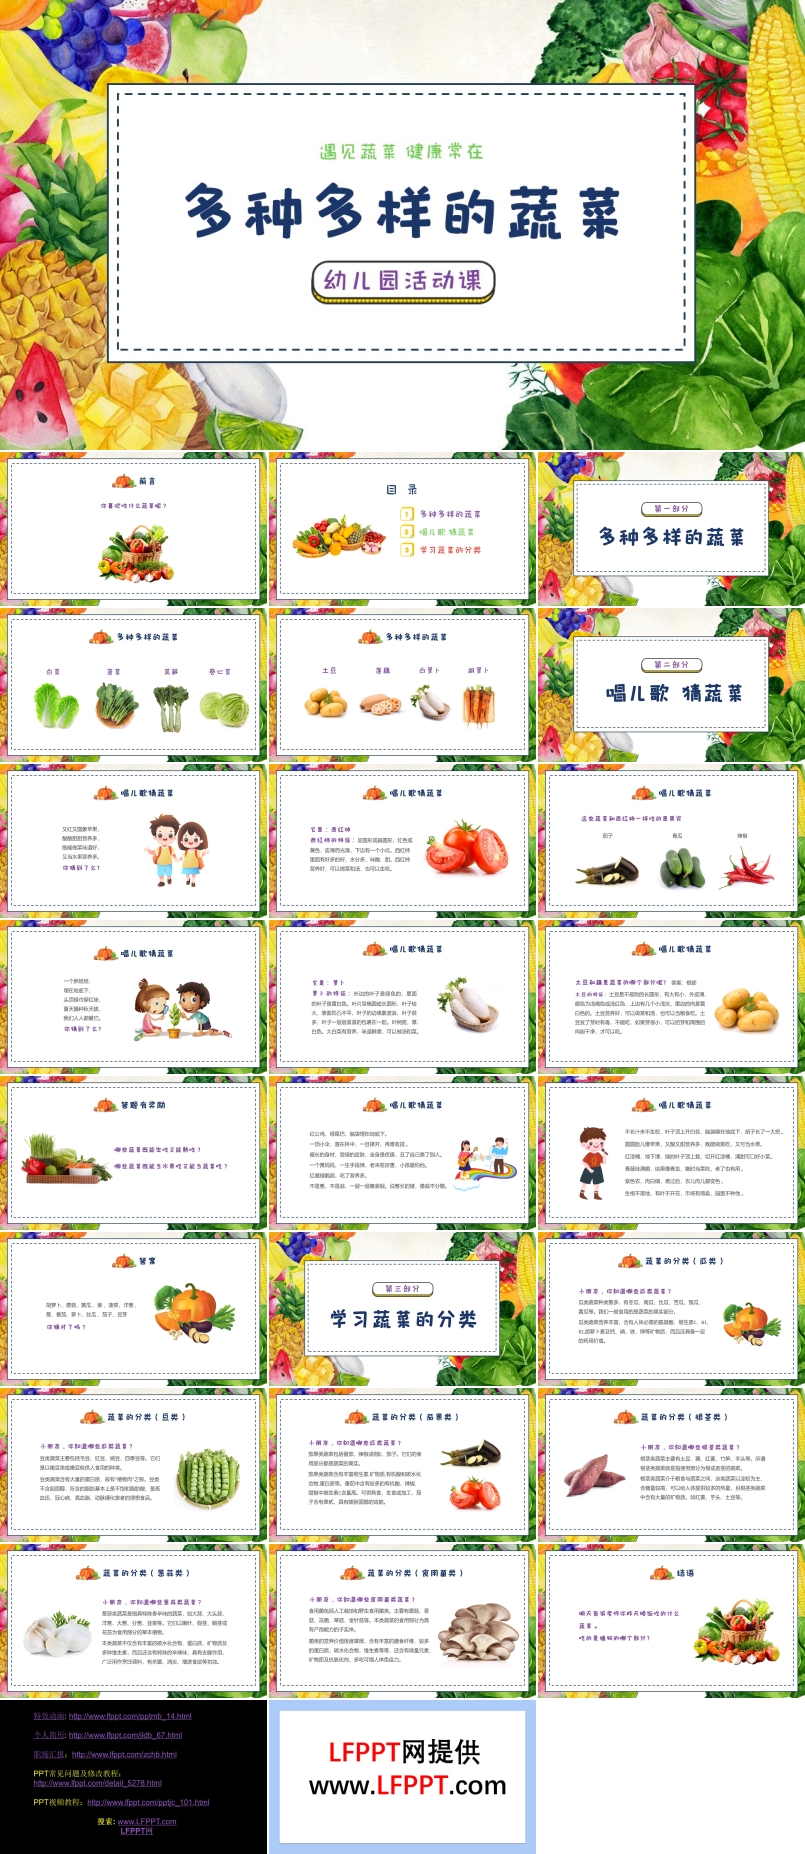 認識蔬菜幼兒園主題班會PPT多種多樣的蔬菜